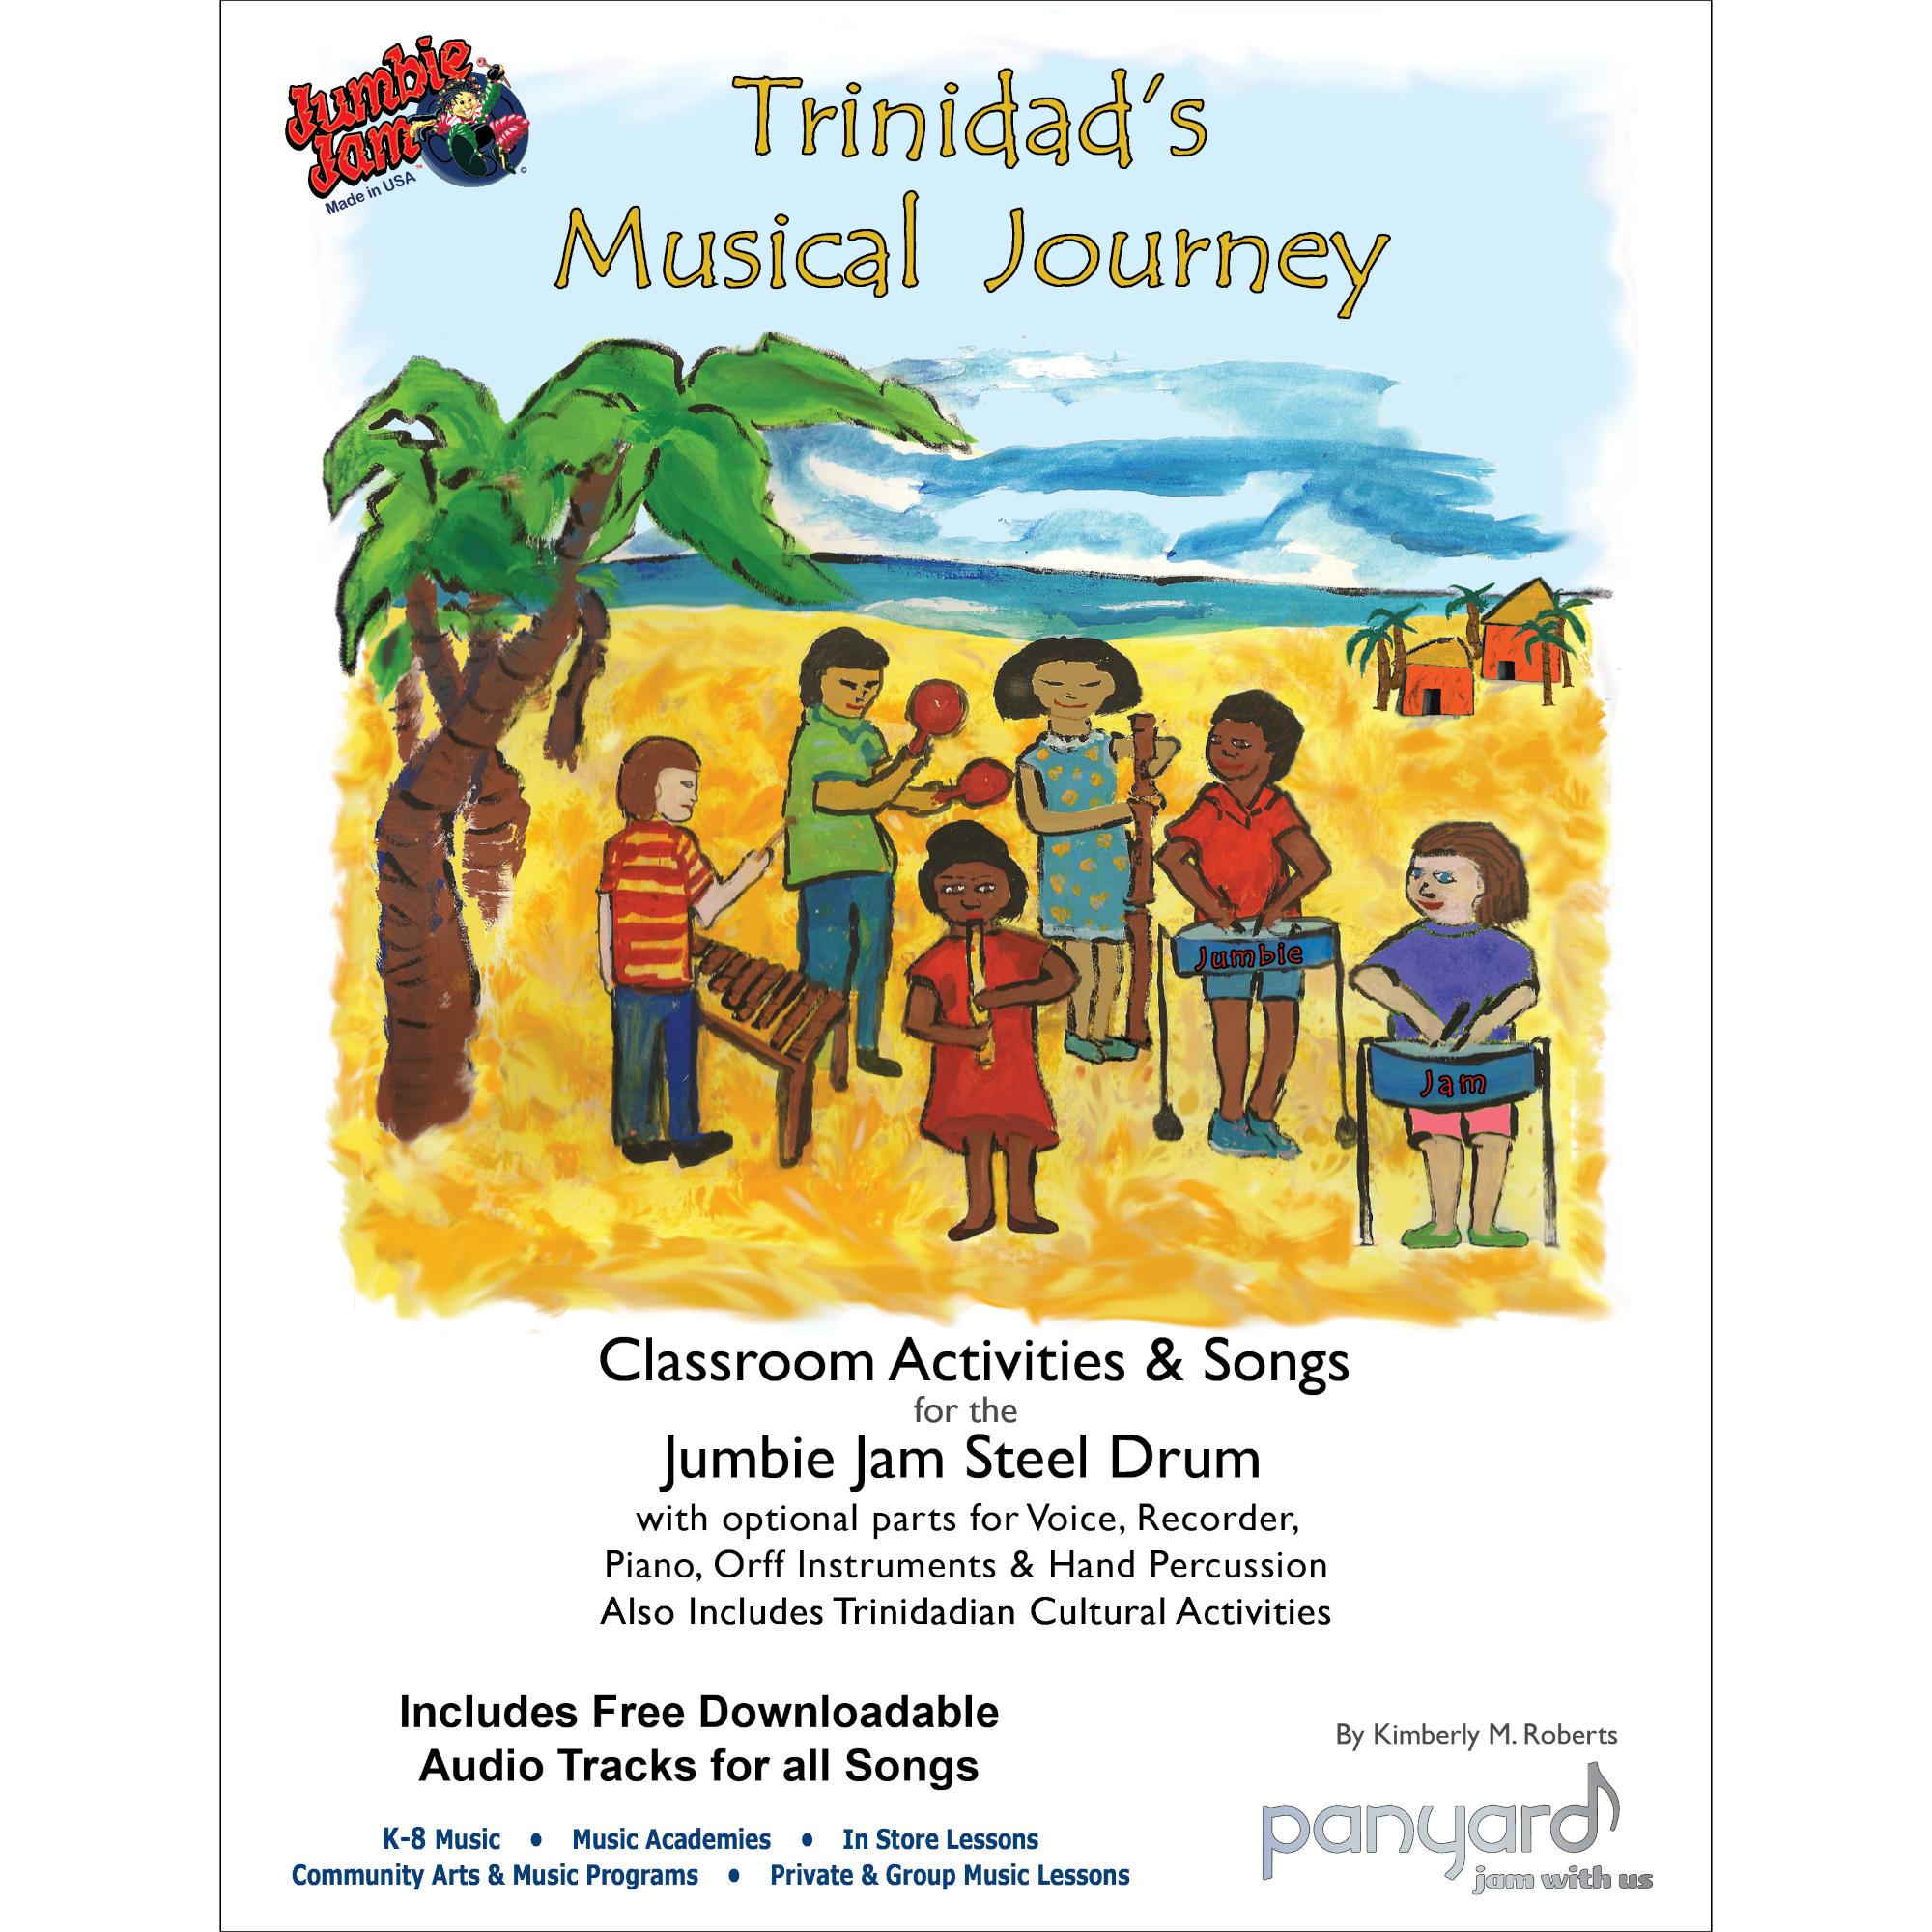 Panyard Jumbie Jam Trinidad's Musical Journey - Comprehensive Teacher's Guide